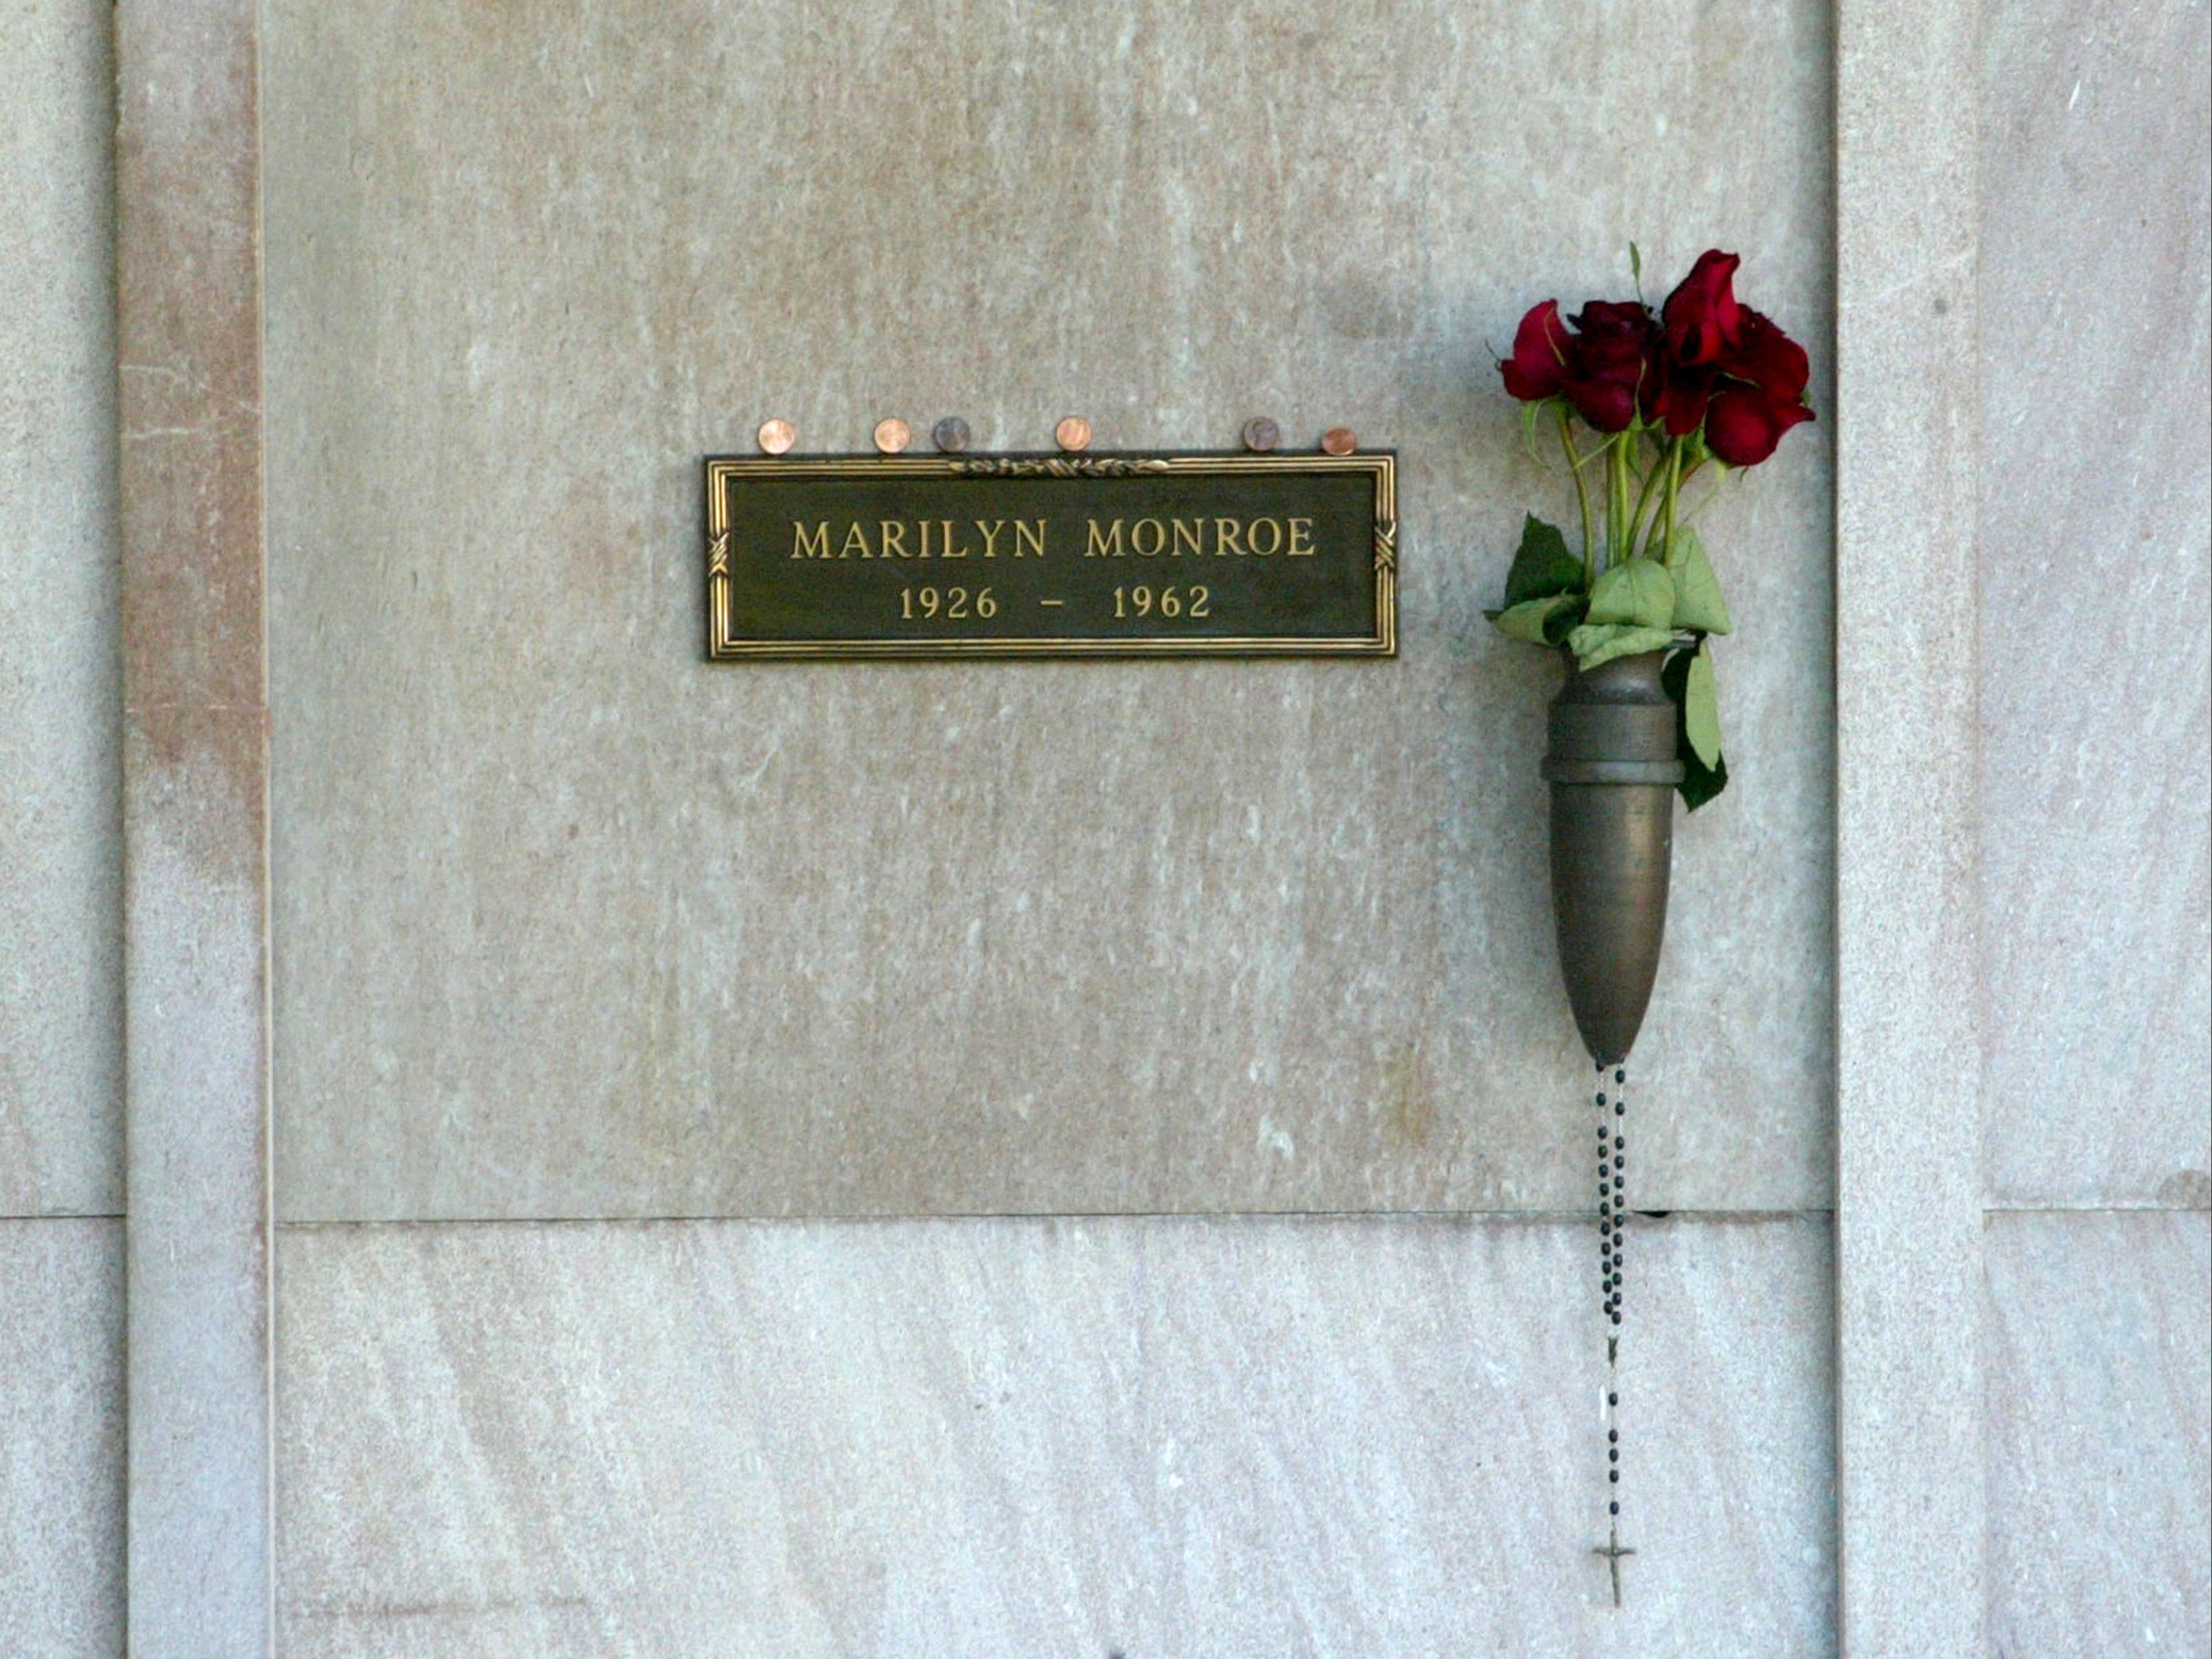 La tumba de la difunta actriz Marilyn Monroe; el fundador de Playboy, Hugh Hefner, compró posteriormente la cripta adyacente